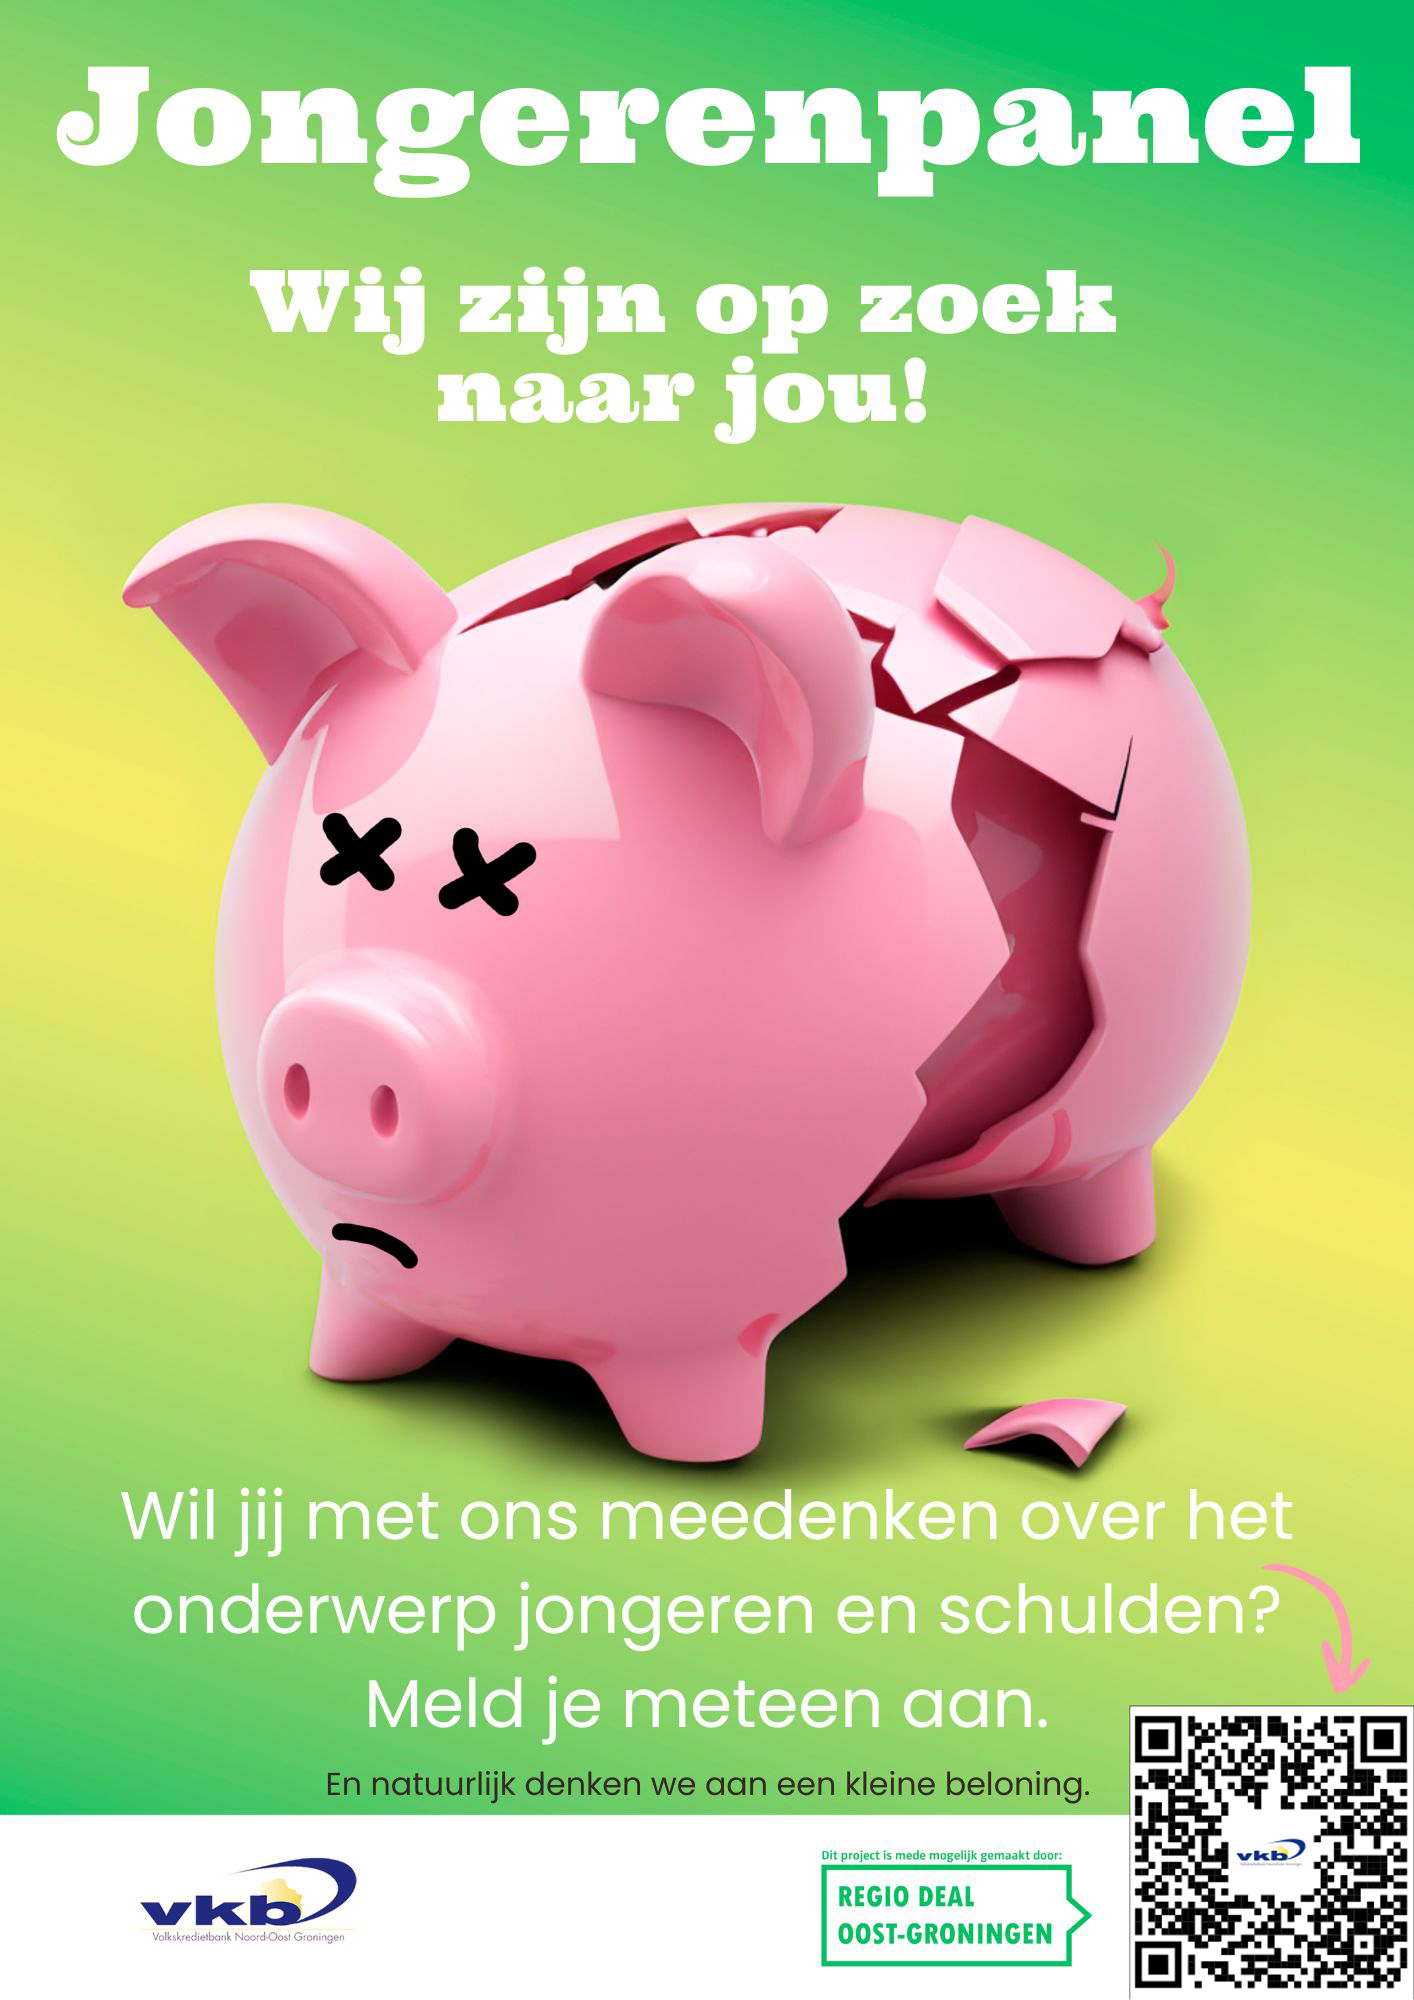 Meedenken in het jongerenpanel? Mail naar jongeren@vkb.nl